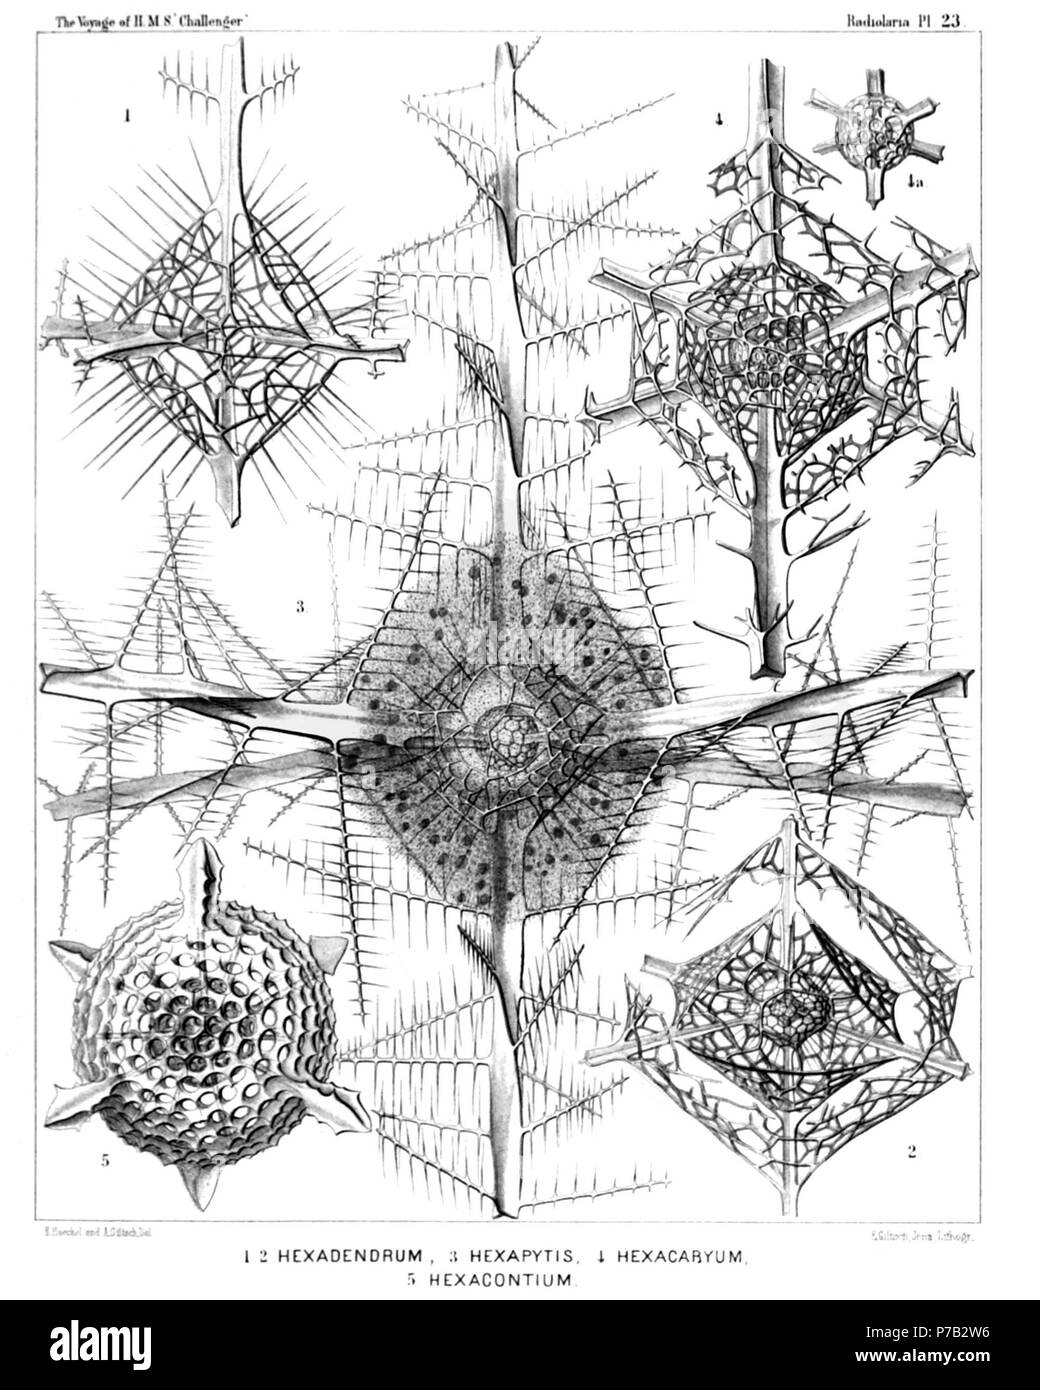 Inglese: Illustrazione dalla relazione sull'Radiolaria raccolti da H.M.S. Challenger durante gli anni 1873-1876. Parte III. Descrizione Originale segue: piastra 23. Cubosphaerida. Diam. Fig. 1. Hexadendron bipinnatum, n. sp., × 400 Fig. 2. Hexacromyum octahedrum, n. sp., × 400 Fig. 3. Hexancistra mirabilis, n. sp. (= Hexapitys mirabilis) × 400 sferica capsula centrale racchiude il sferici concentrici guscio interno (che è riempito dal nucleo), ed è circondato da ottaedrico guscio esterno. Quest'ultima è avvolta dalla calymma ottaedrico, il quale è radialmente e striato contiene Foto Stock